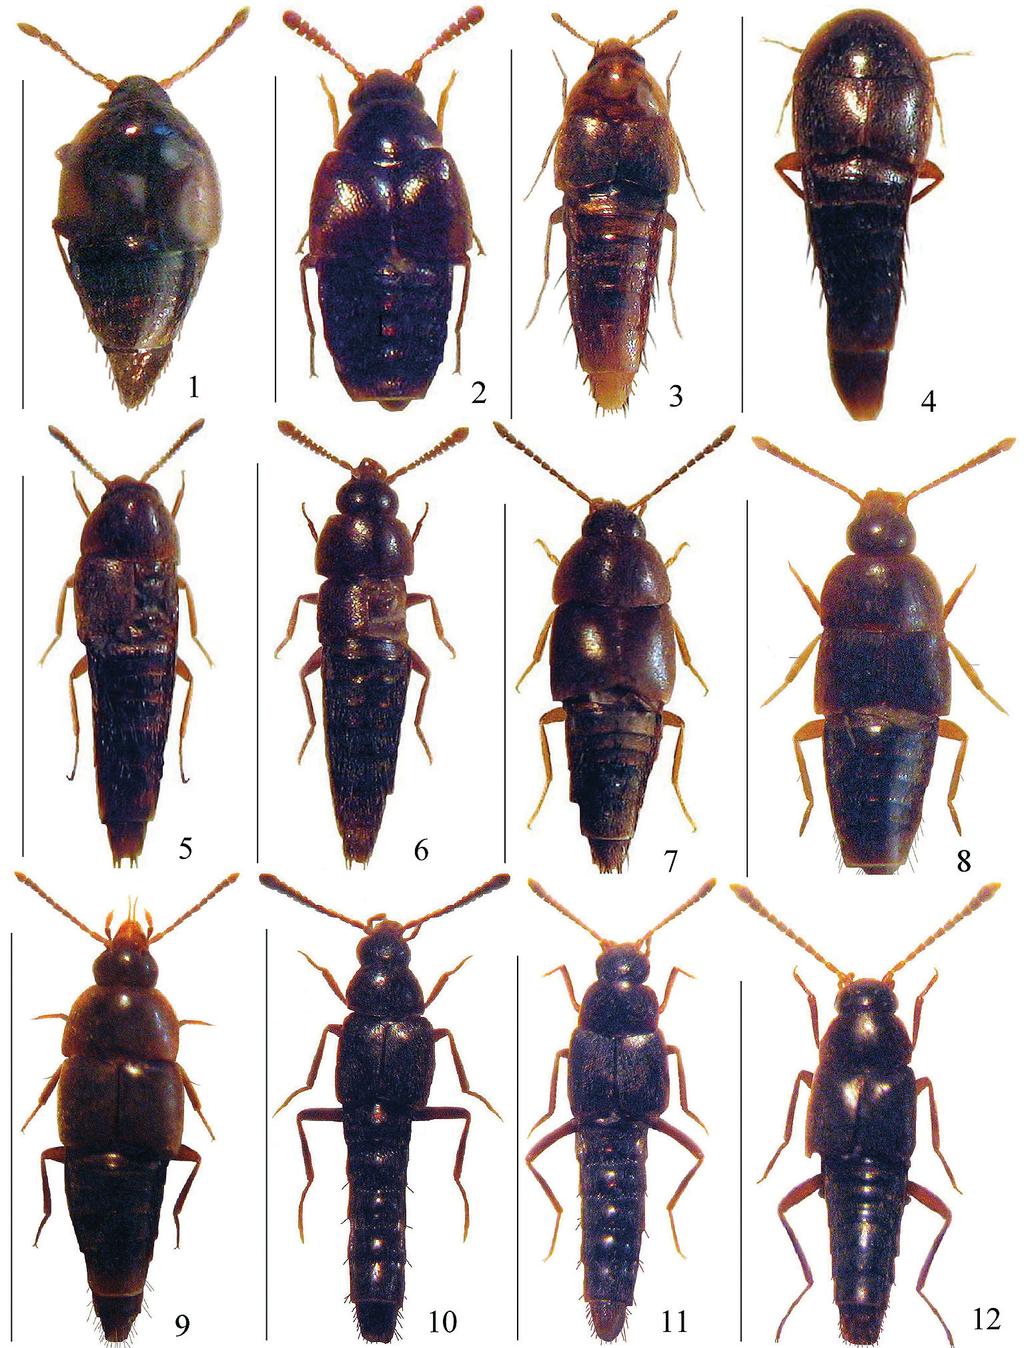 98 PACE, R.: Biodiversità delle Aleocharinae della Cina: Hypocyphtini Figg. 1-12: Habitus. 1. Holobus sinorum n. sp., scala 1,1 mm; 2. Holobus sichuanensis n. sp, scala 1,4 mm; 3.